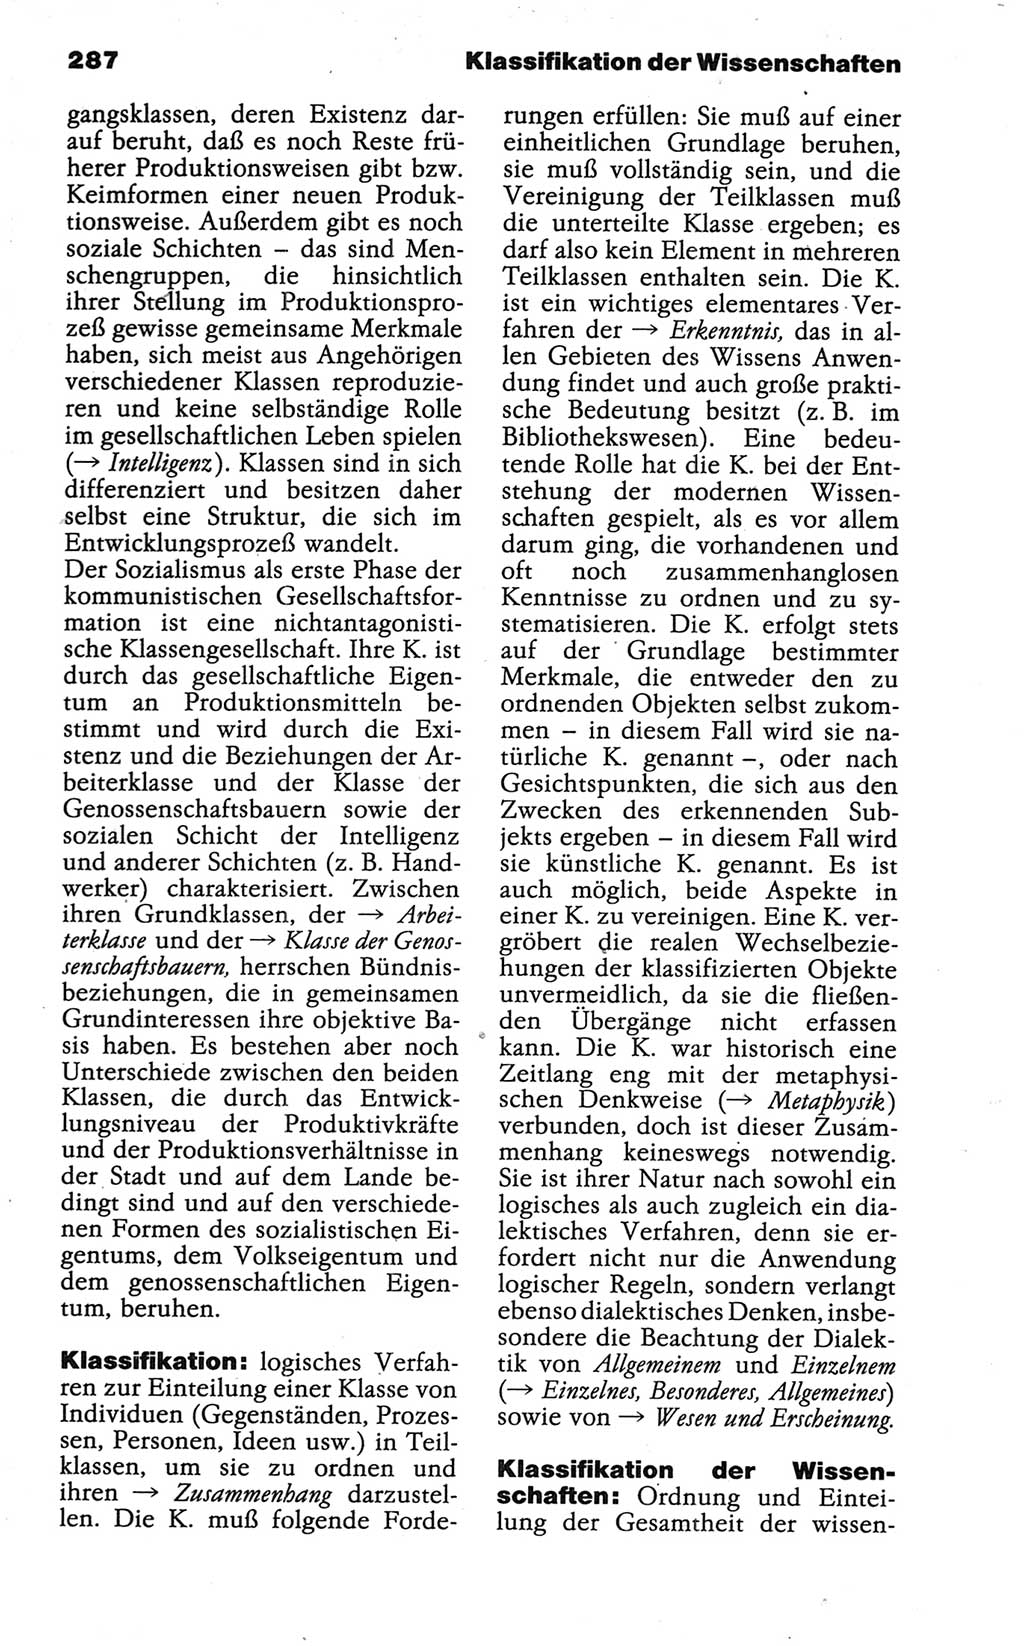 Wörterbuch der marxistisch-leninistischen Philosophie [Deutsche Demokratische Republik (DDR)] 1986, Seite 287 (Wb. ML Phil. DDR 1986, S. 287)